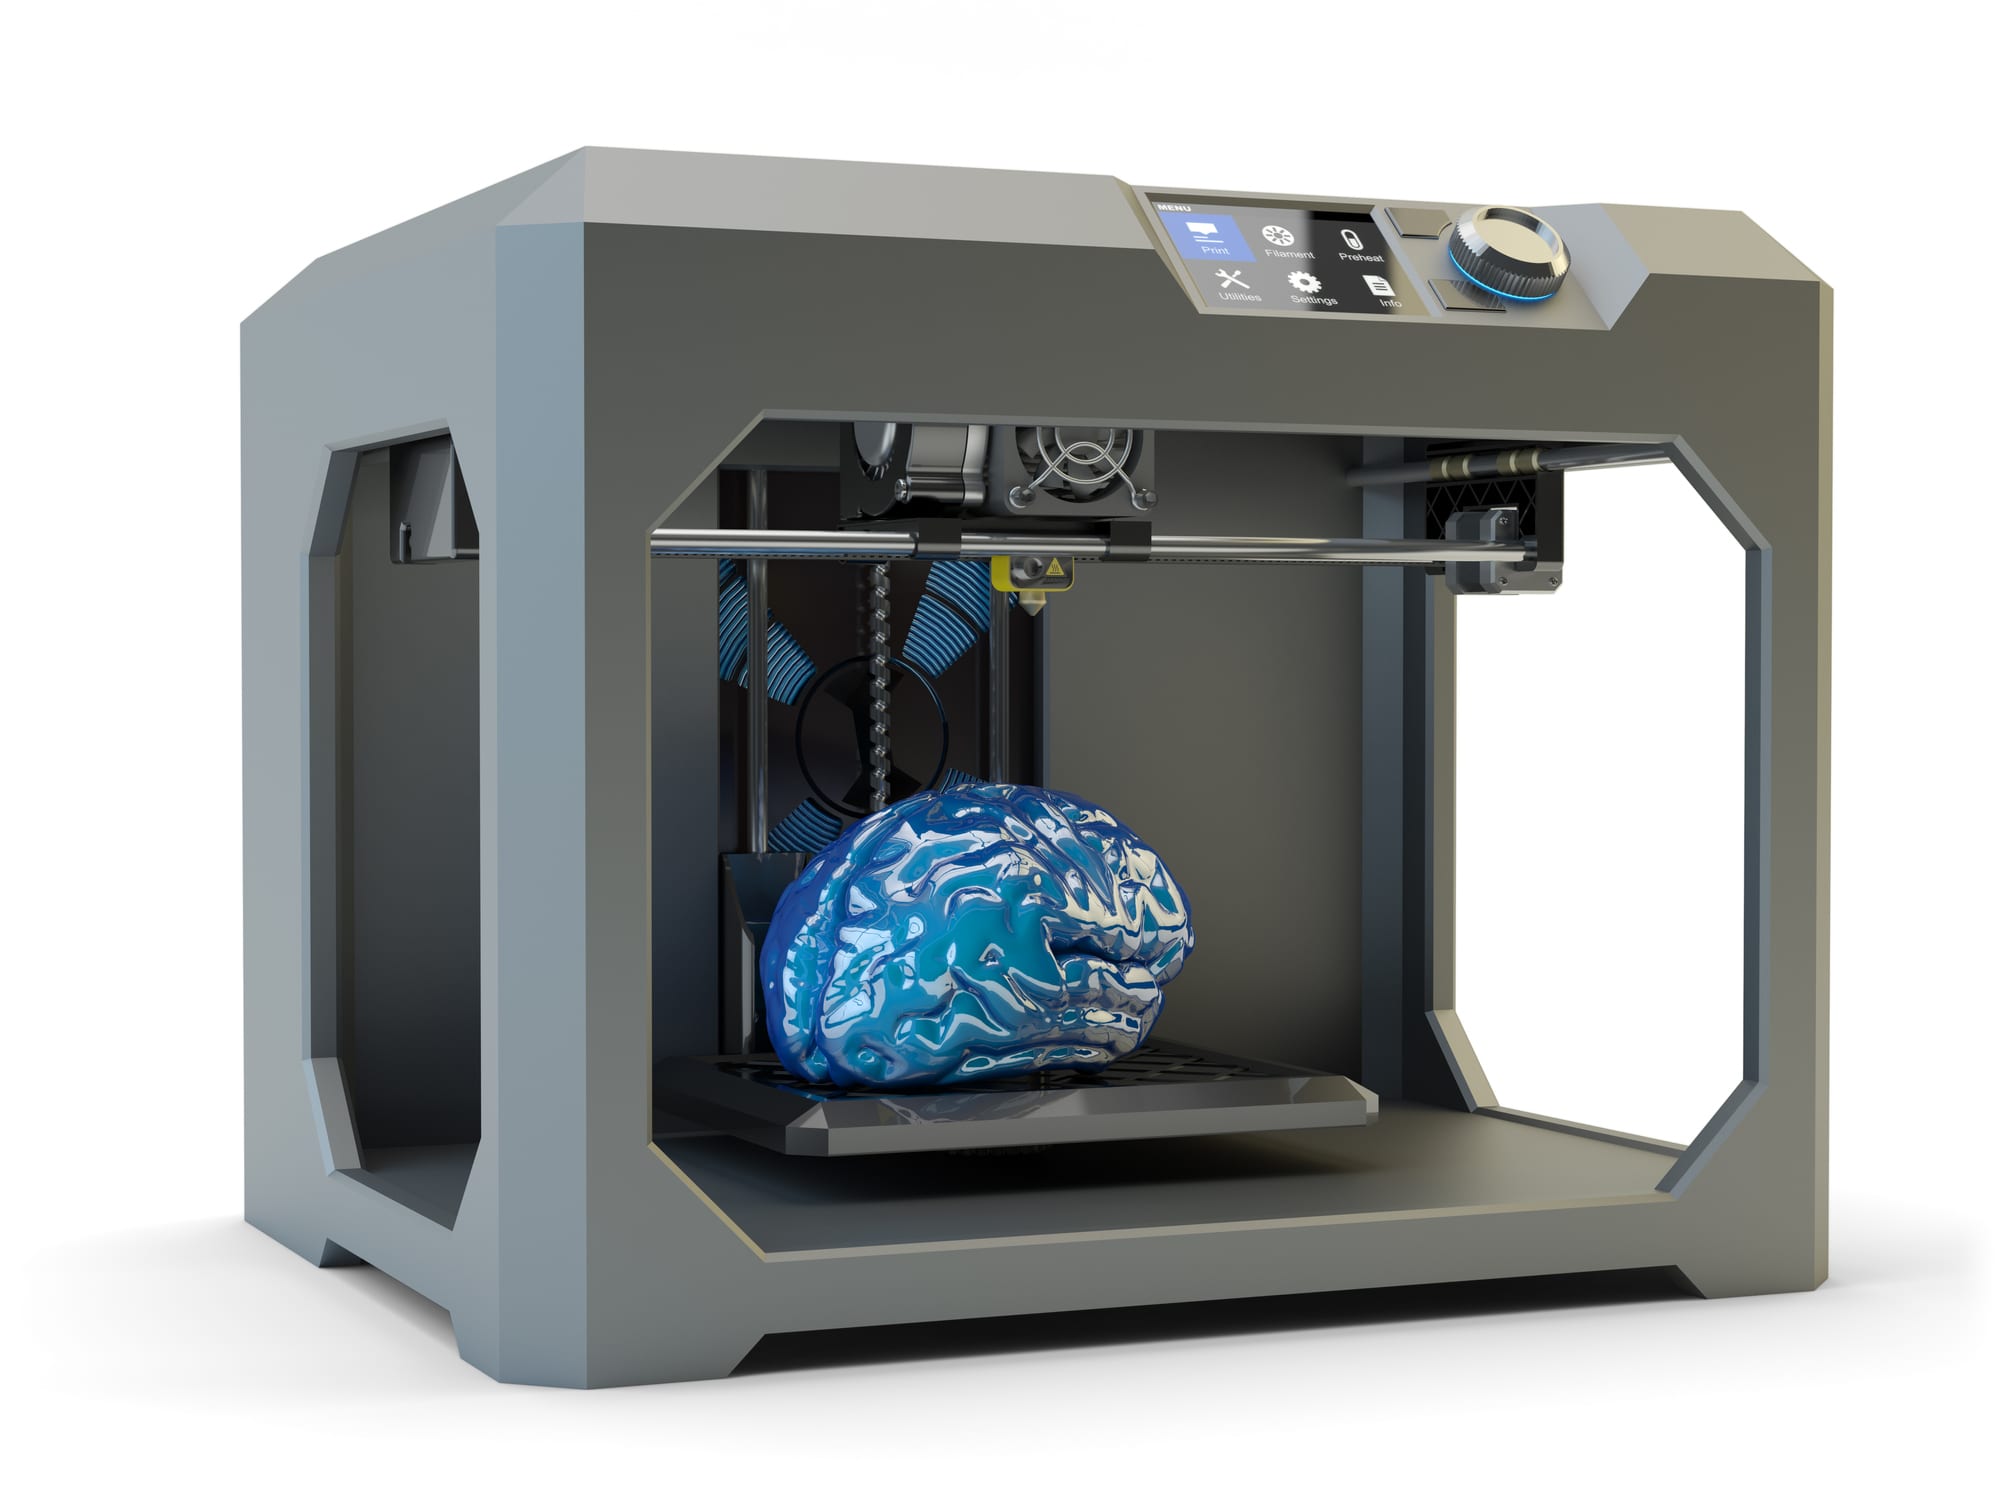 Pirat Rummet blotte 3D gennembrud: Nu kan alle printe en interaktiv model af hjernen | Dit  Korsør